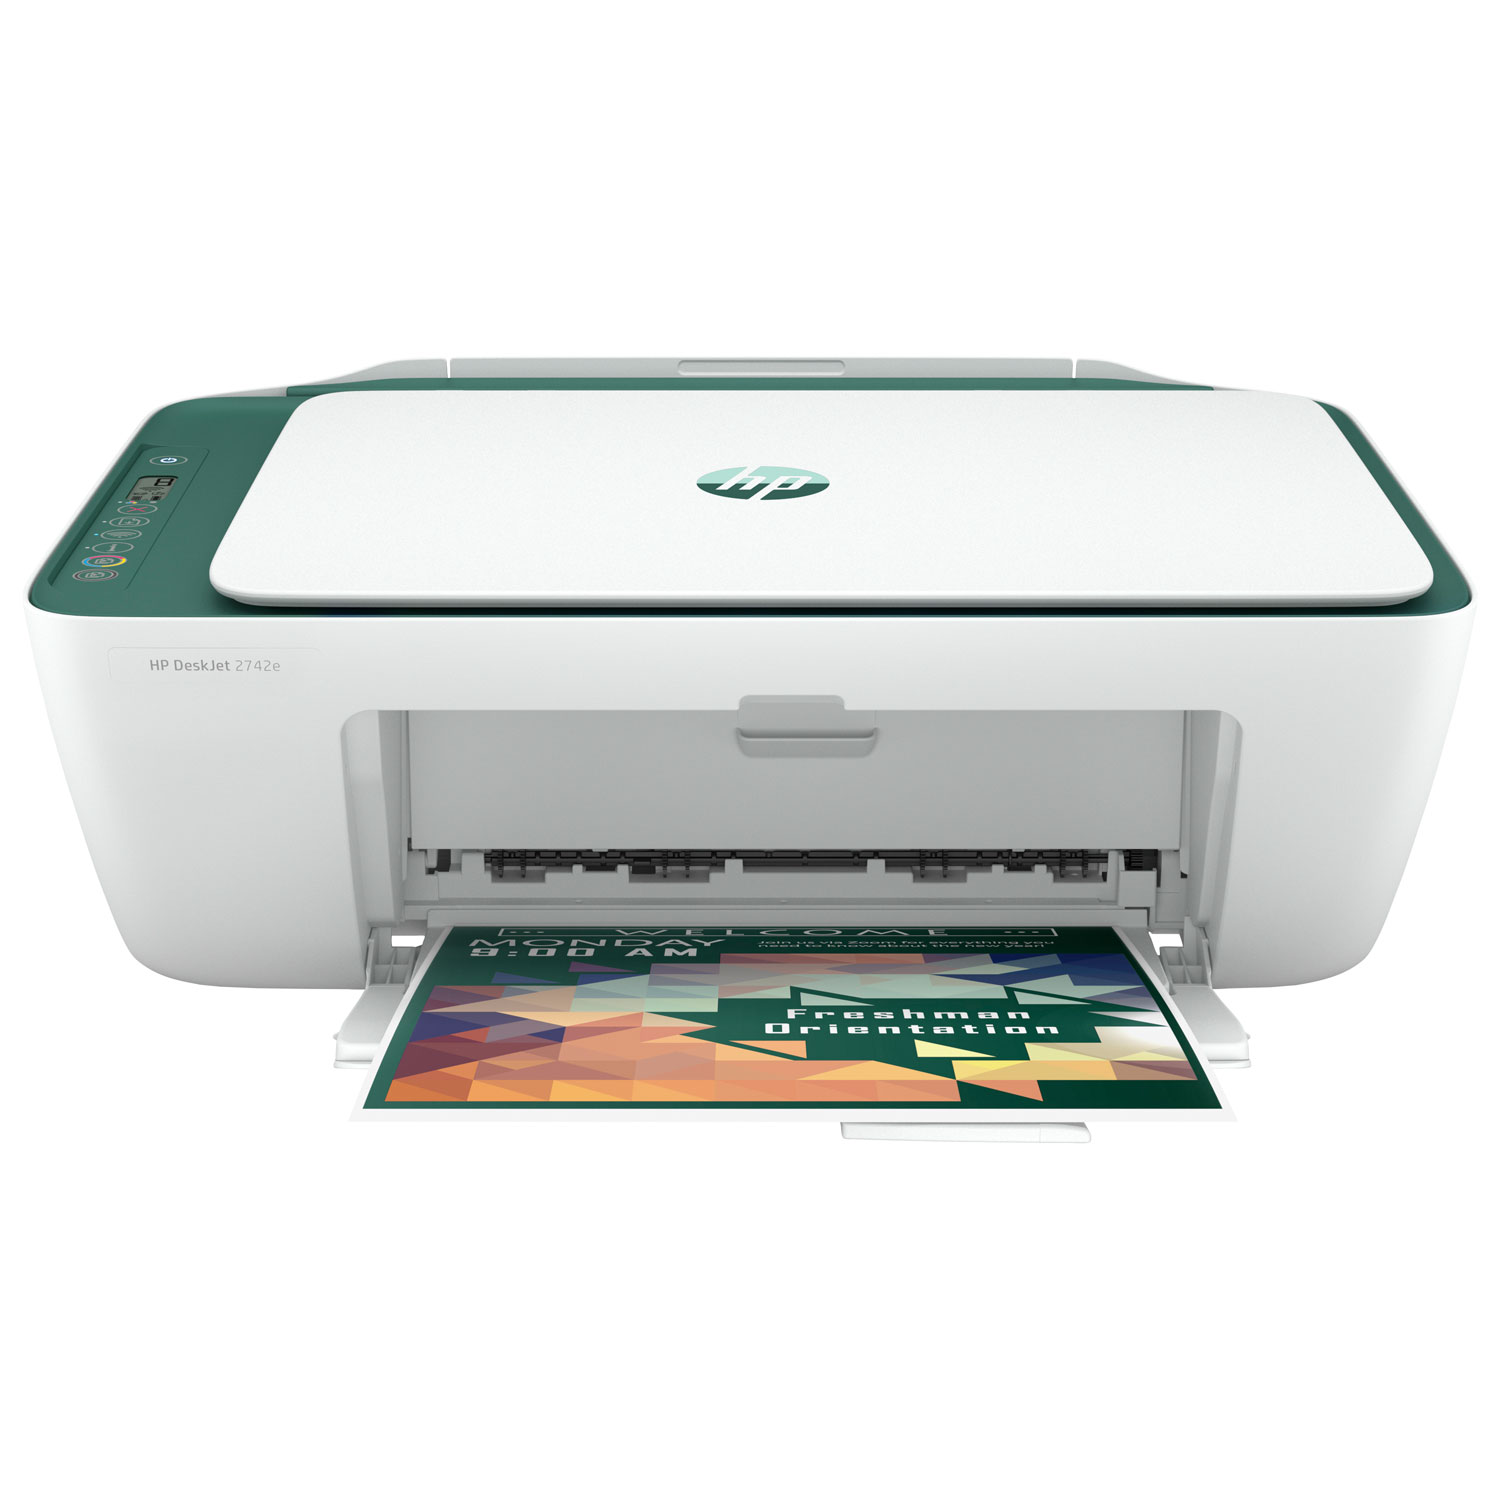 HP DeskJet 2742e Wireless All-In-One Inkjet Printer - Green Matcha